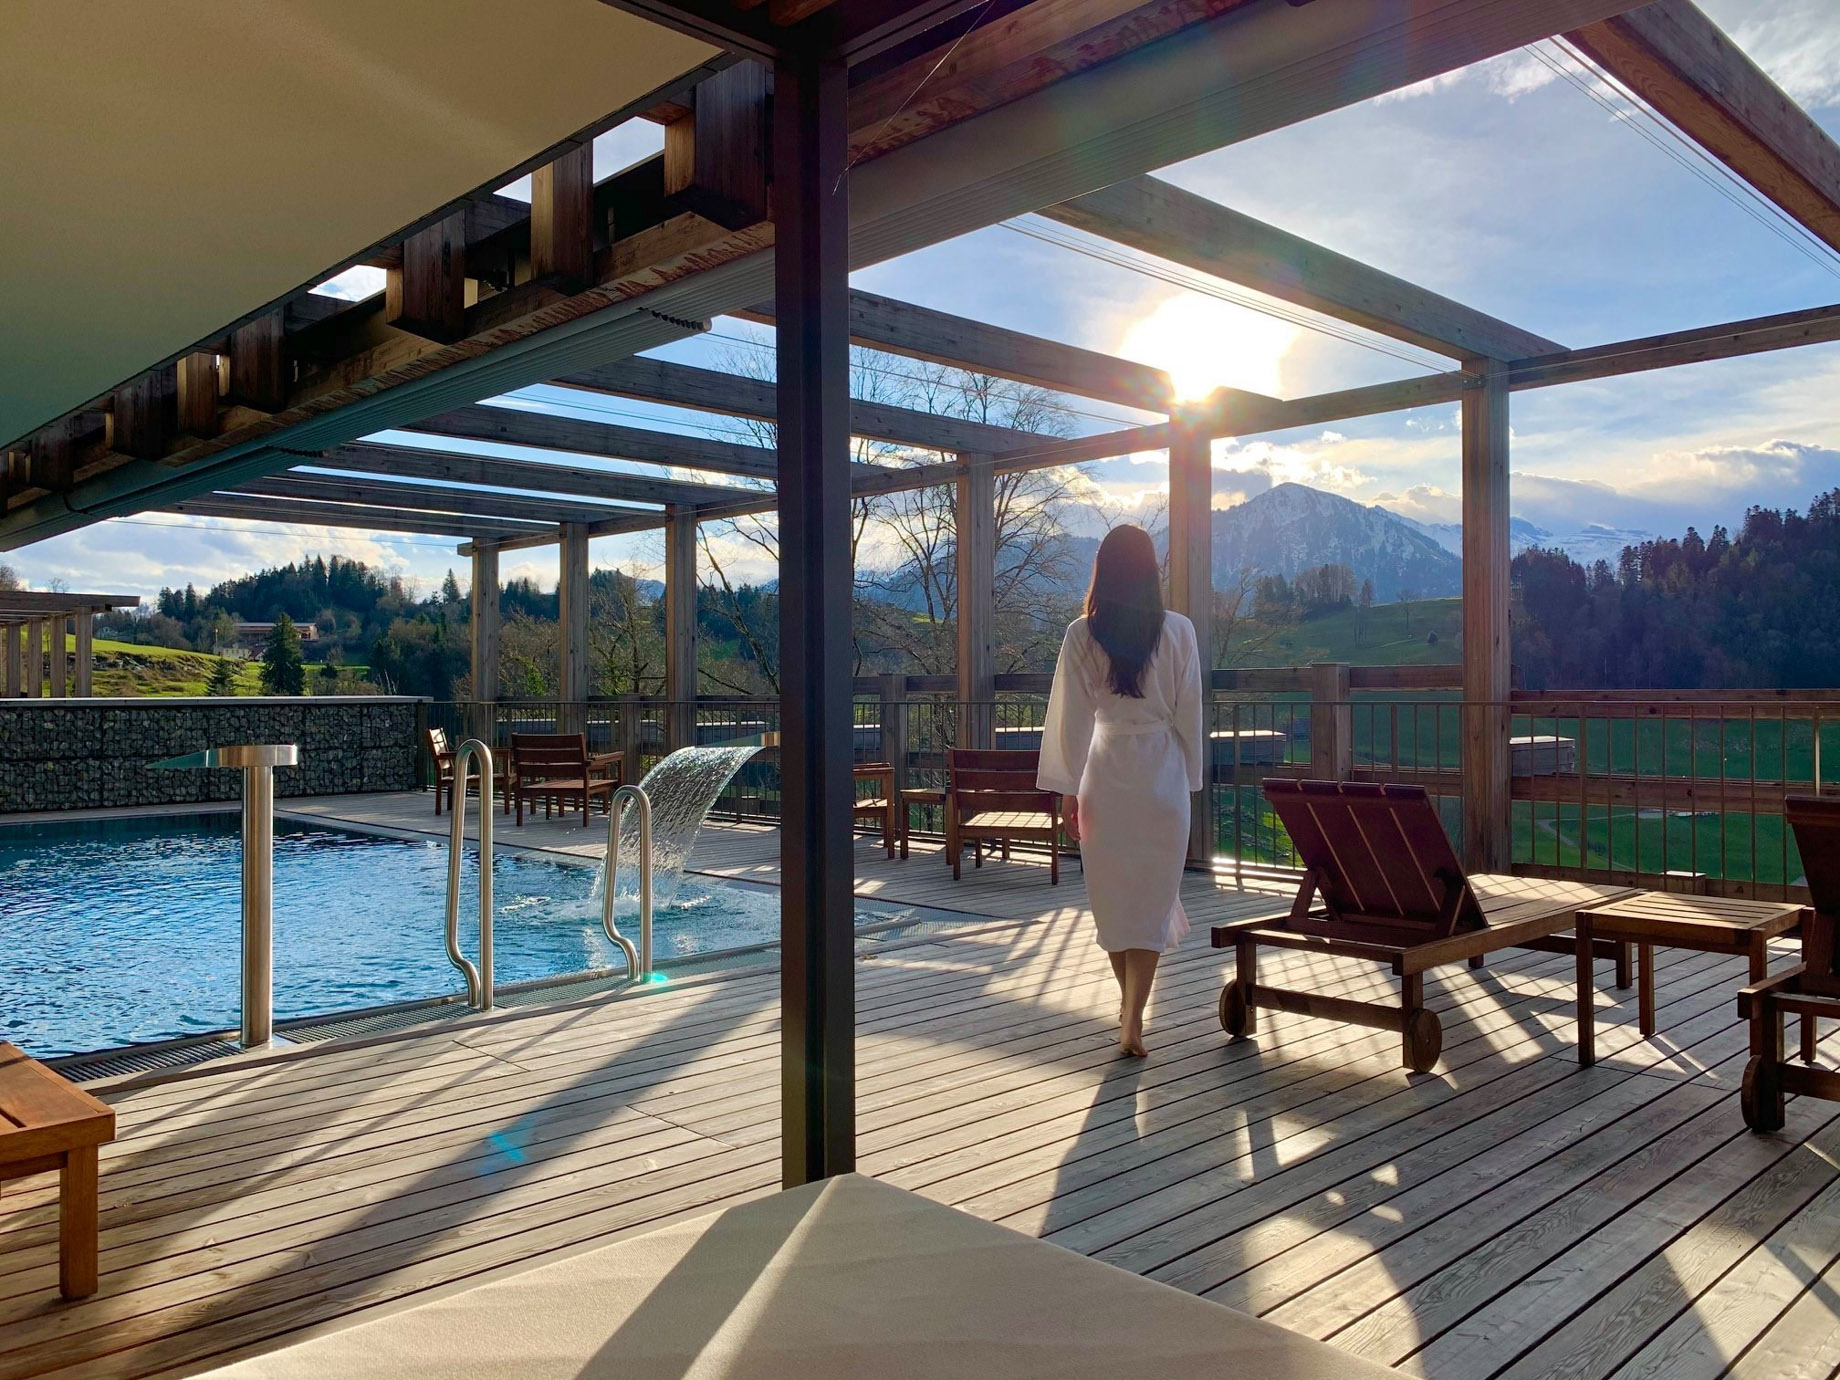 Waldhotel – Burgenstock Hotels & Resort – Obburgen, Switzerland – Outdoor Pool Deck View